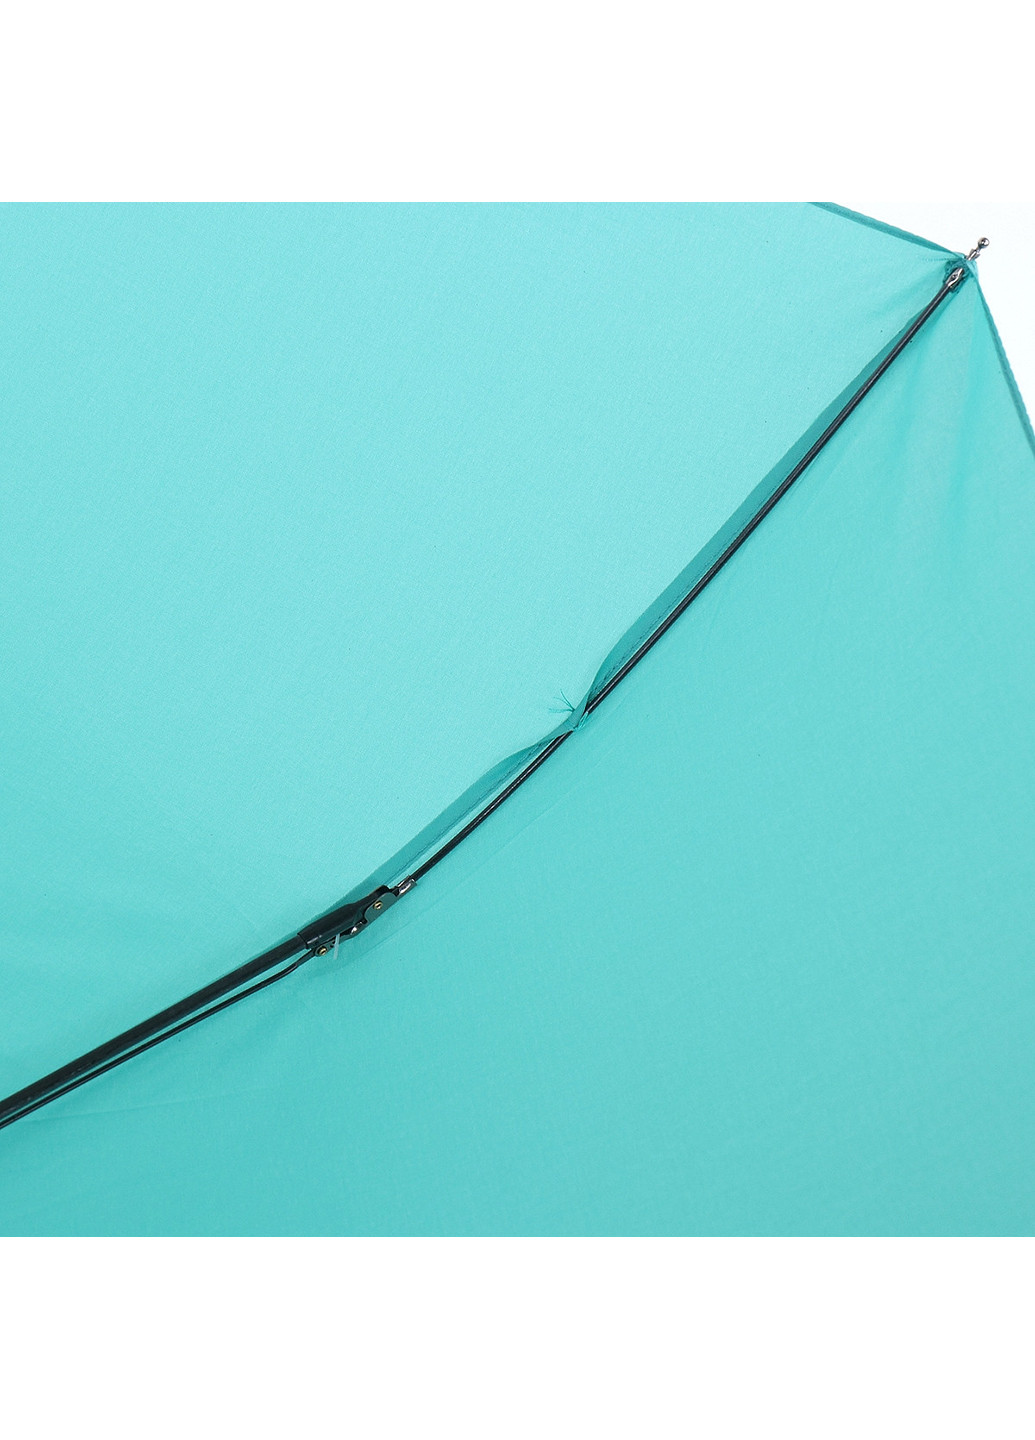 Жіноча складна парасолька напівавтомат 98 см ArtRain (255710359)